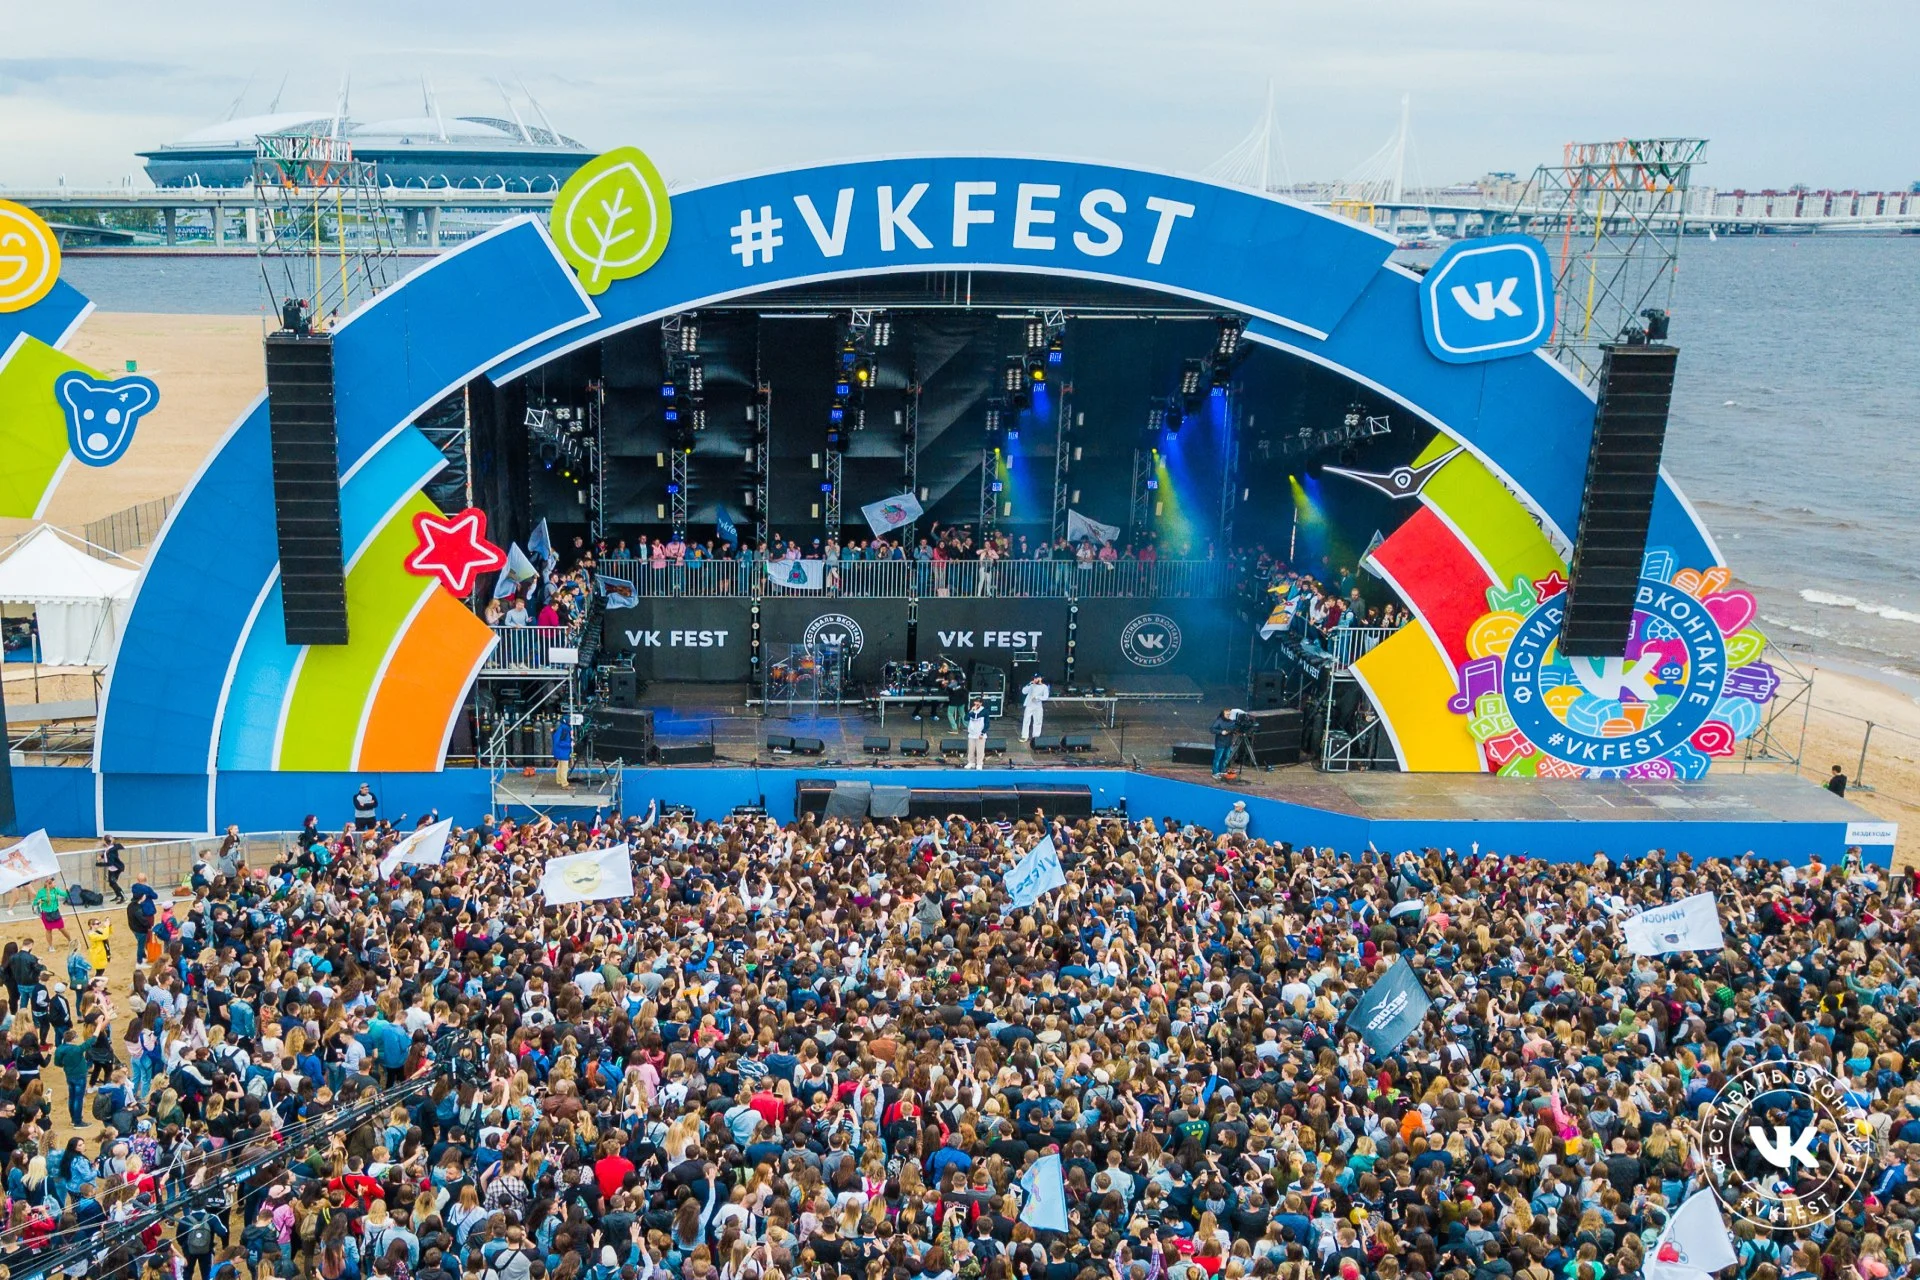 На VK Fest 2019 будет предостаточно развлечений на любой вкус, но одним из главных событий станут выступления известных исполнителей. Количество громких имен в списке участников поражает, но если вы по каким-то причинам отстали от музыкальных трендов, то мы подобрали для вас одиннадцать отличных артистов на любой вкус. Среди них вы явно найдете, кого послушать на VK Fest!